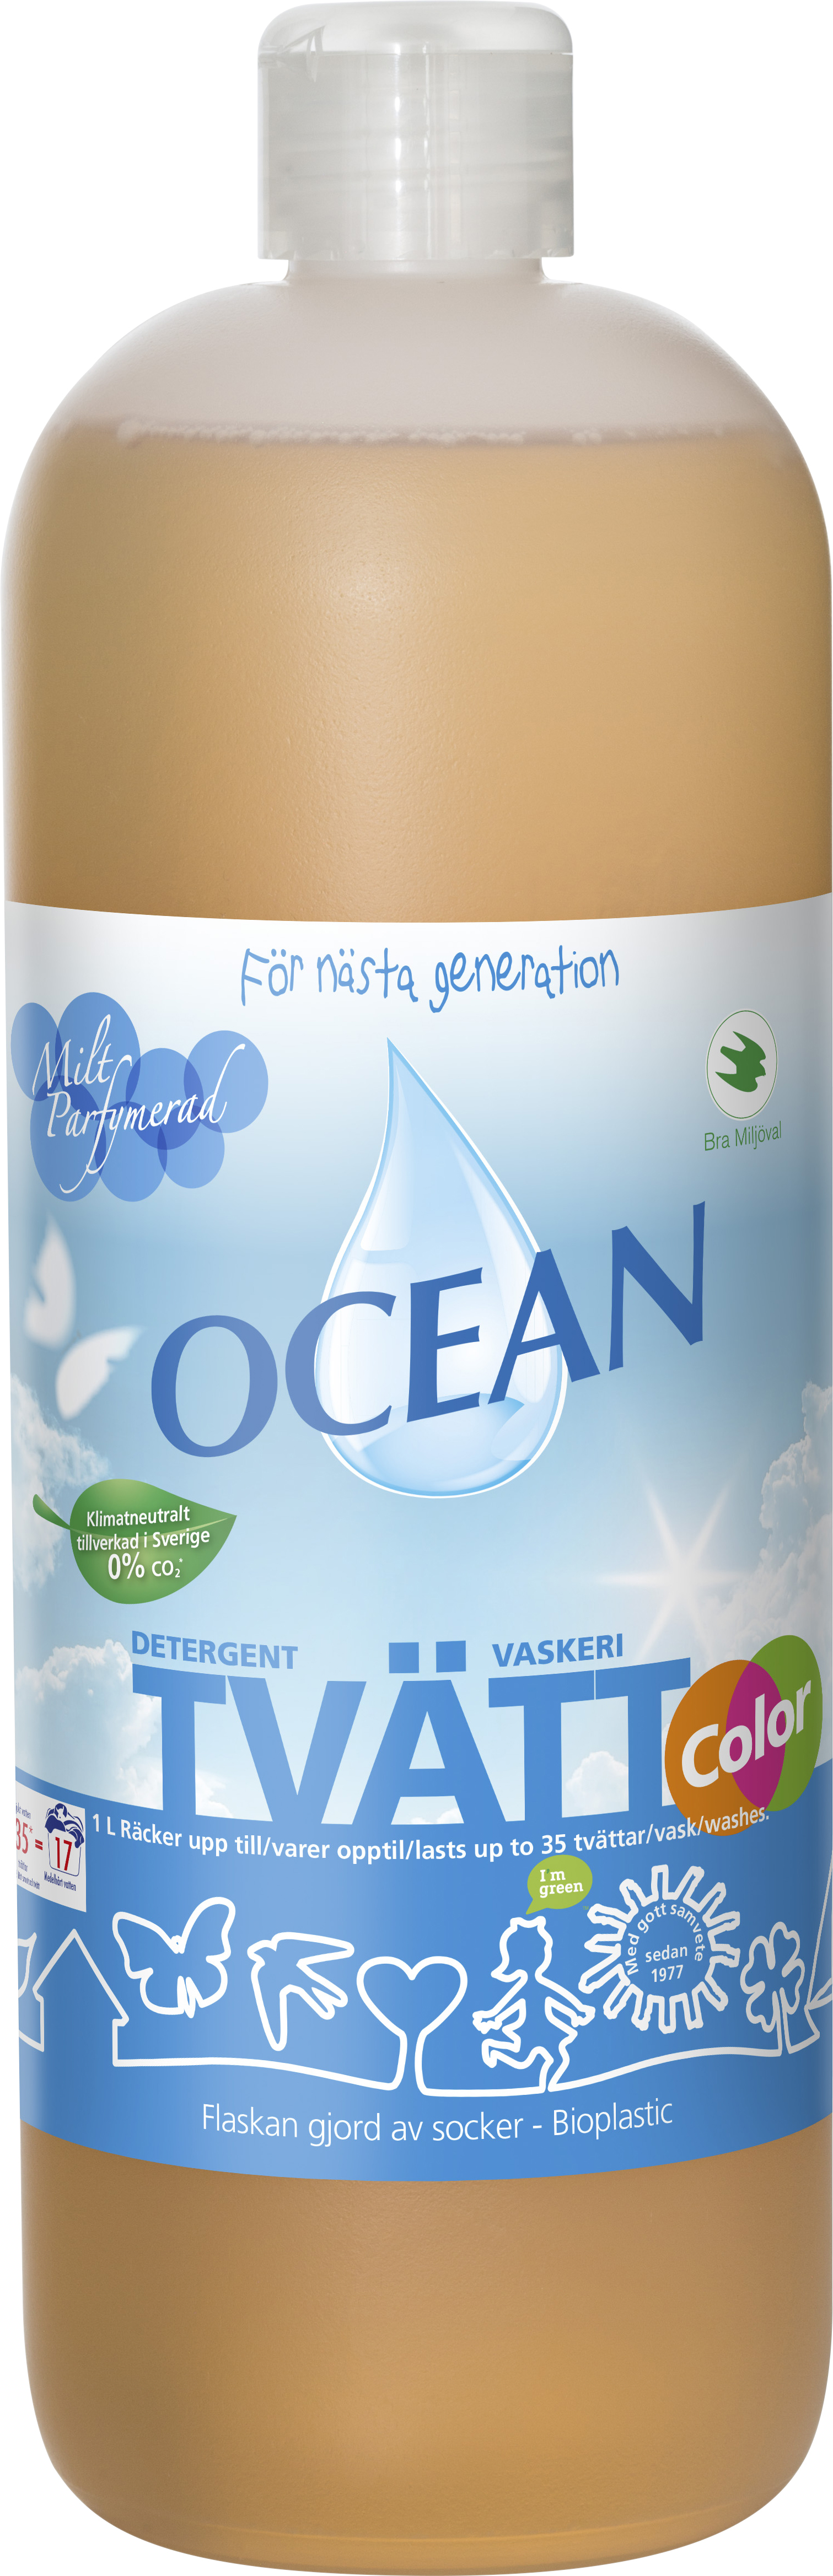 Tvättmedel Ocean Flytande Parfymerat 1 l